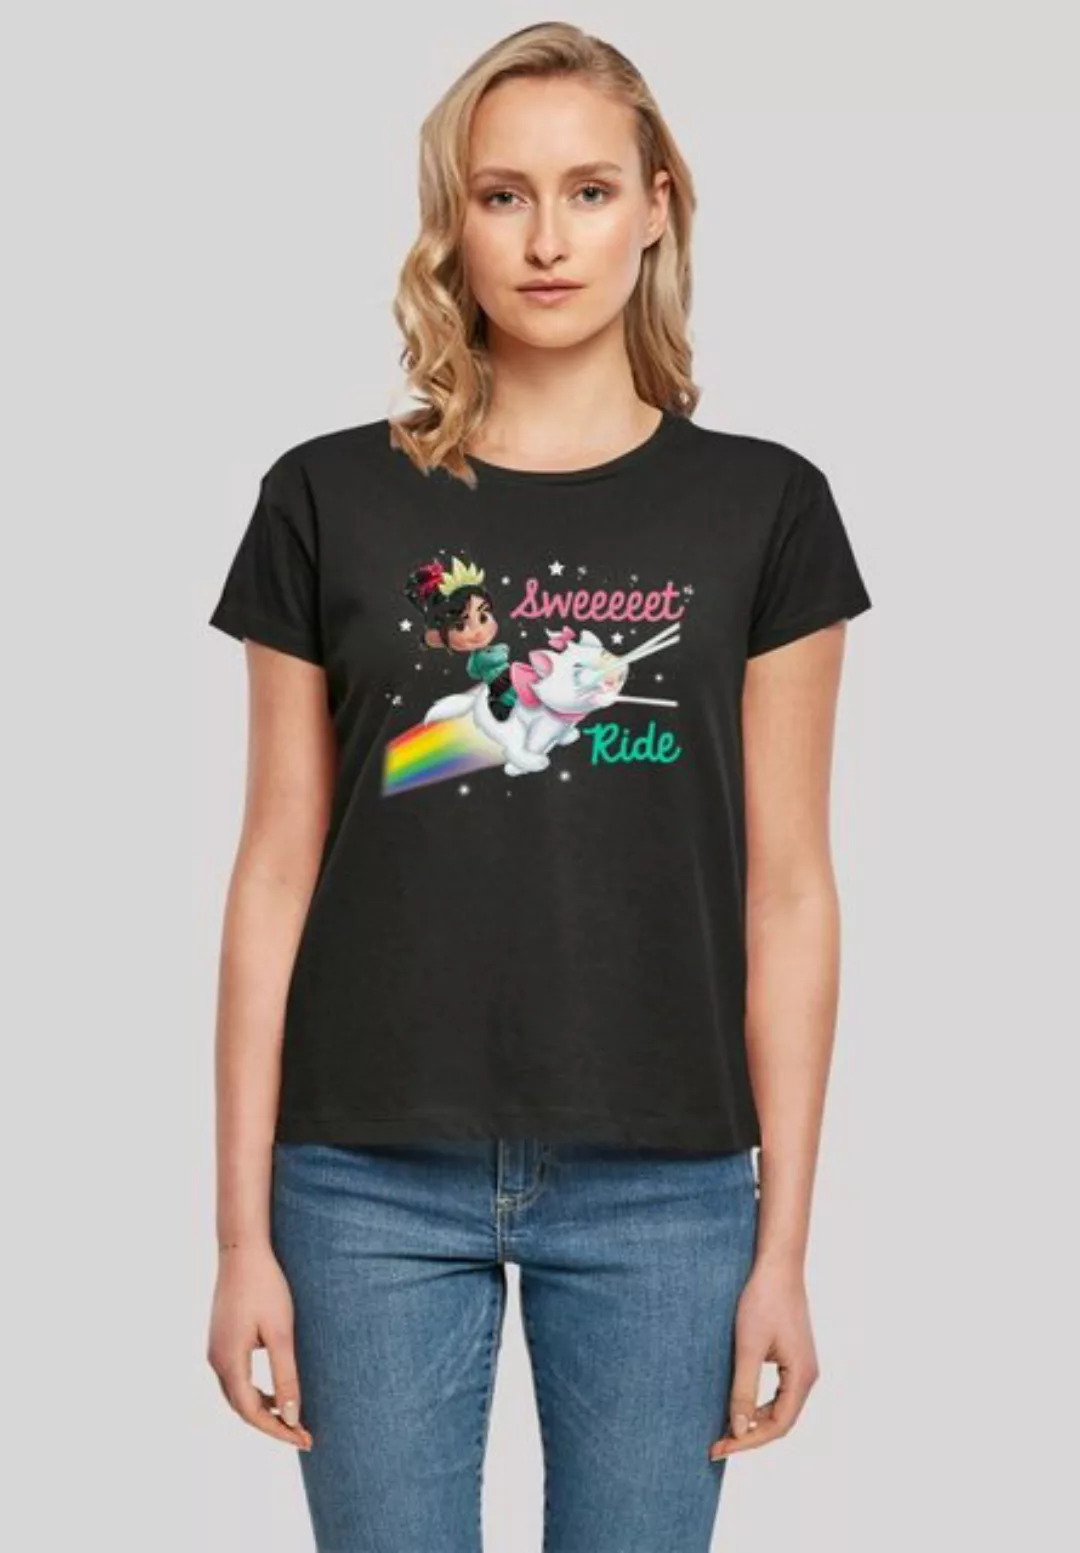 F4NT4STIC T-Shirt Disney Ralph reichts Sweet Ride Premium Qualität günstig online kaufen